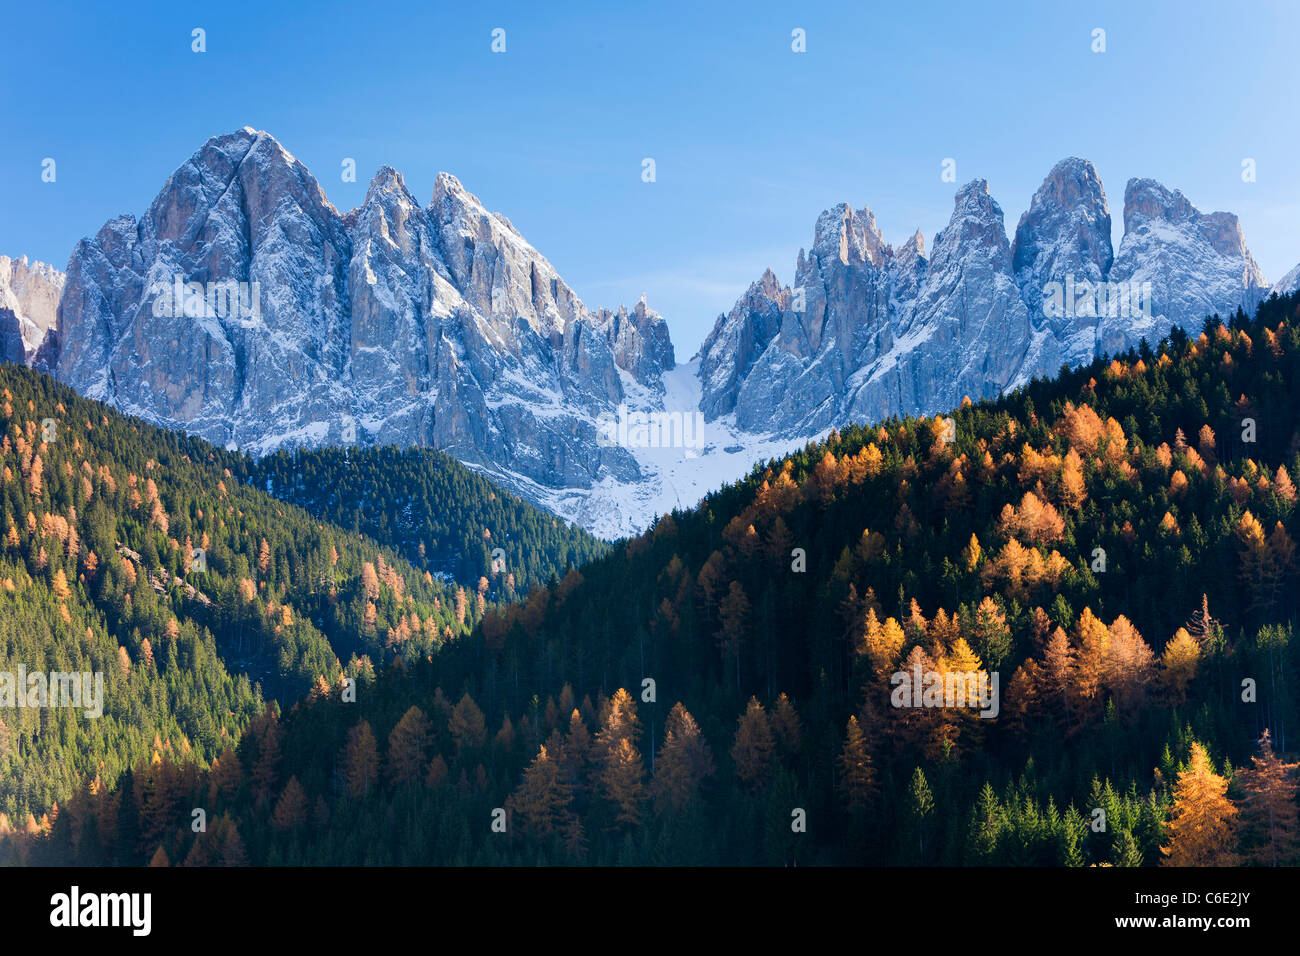 Mountains, Geisler Gruppe/ Geislerspitzen, Dolomites, Trentino-Alto Adige, Italy, Europe Stock Photo